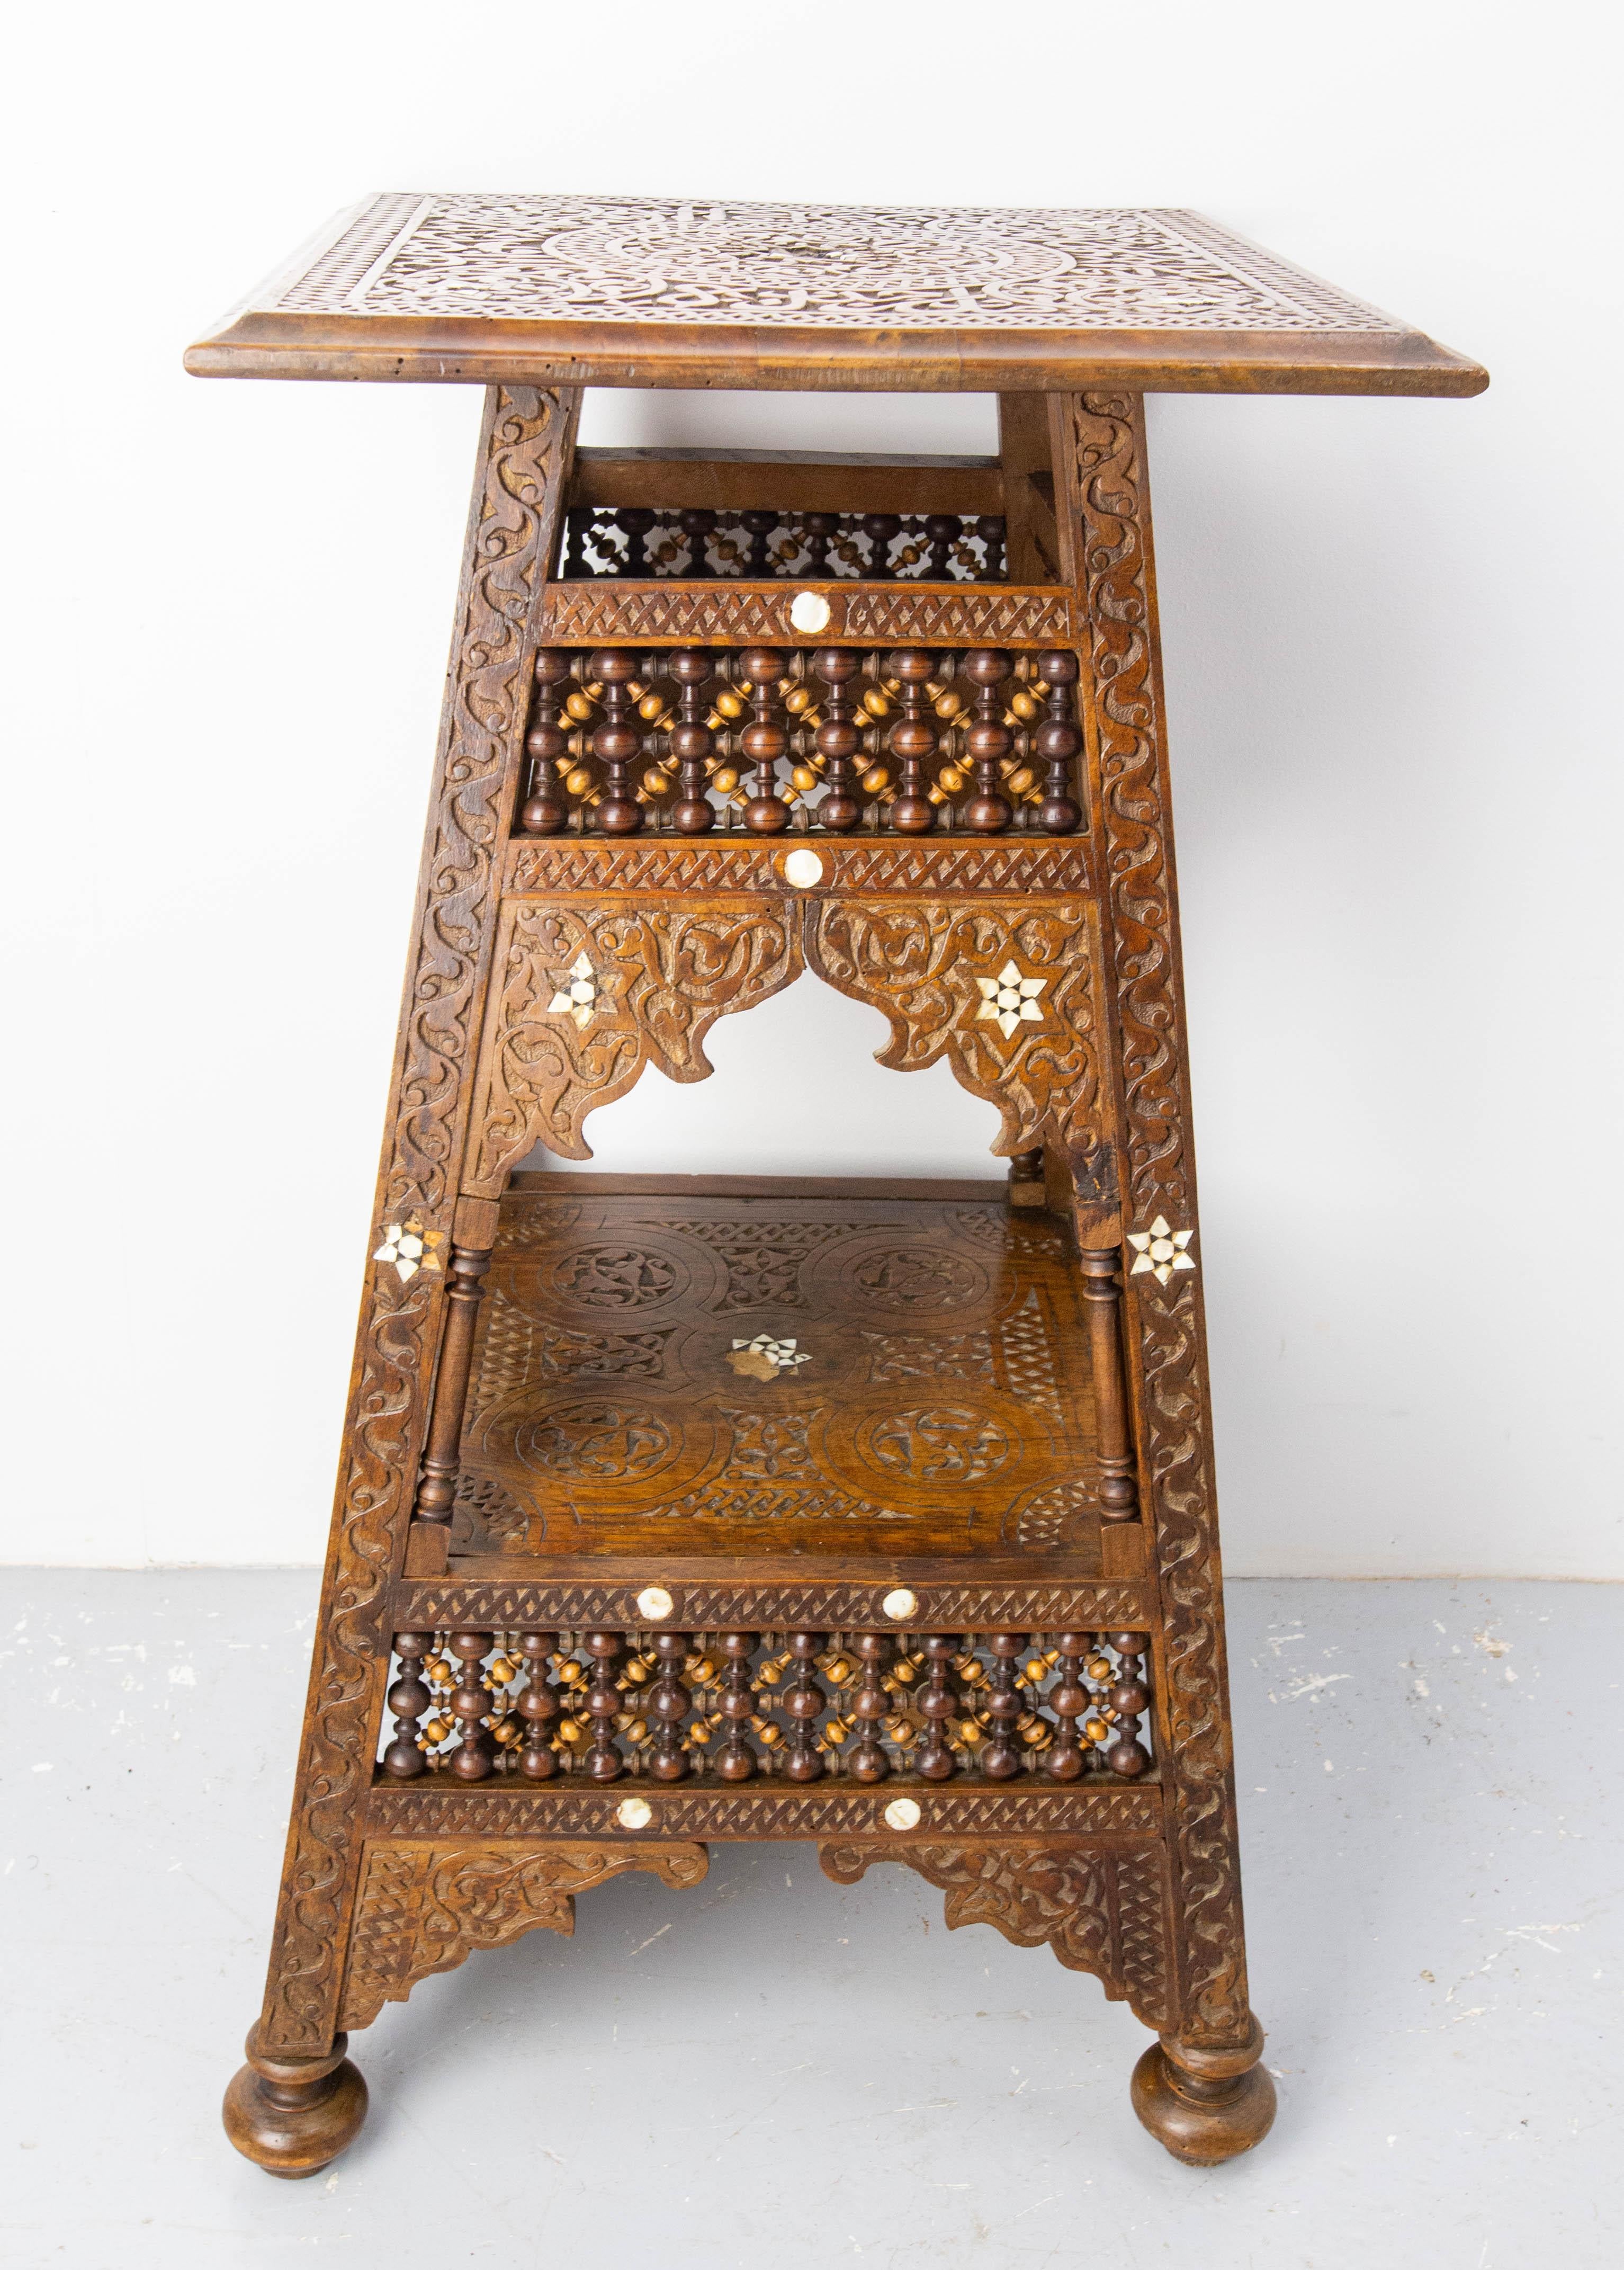 Thuya-Sellette oder Sockeltisch aus der Mitte des Jahrhunderts, hergestellt in Syrien.
Aus der Zeit um 1900 mit zweifarbigem Holz und Inkrustationen.
Verzierung des oberen Tabletts mit arabischen Buchstaben
Guter Zustand, einige der Inkrutierungen